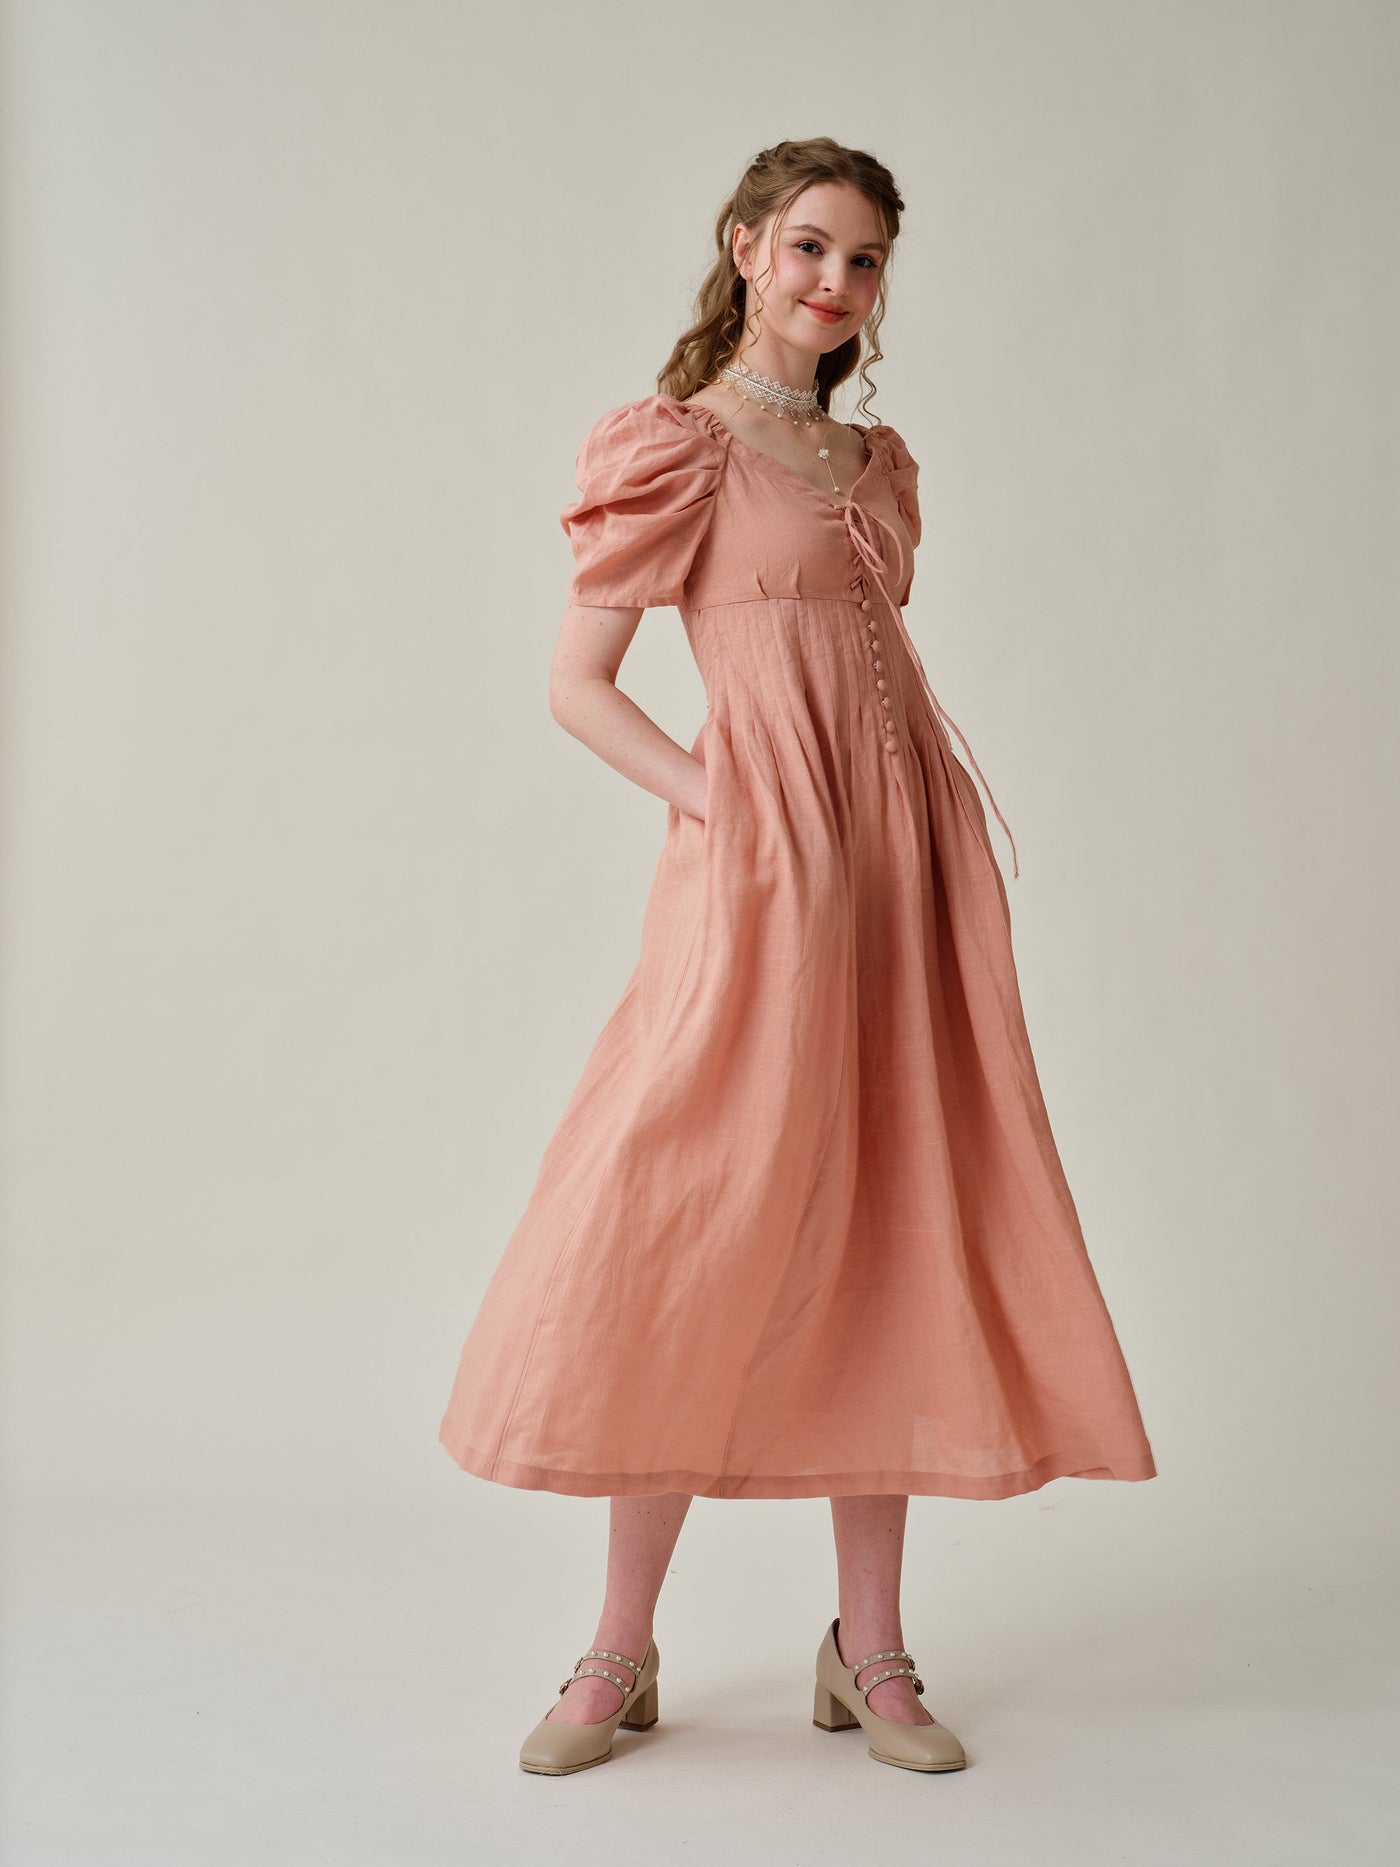 Hilma 21 |Linen regency corset dress